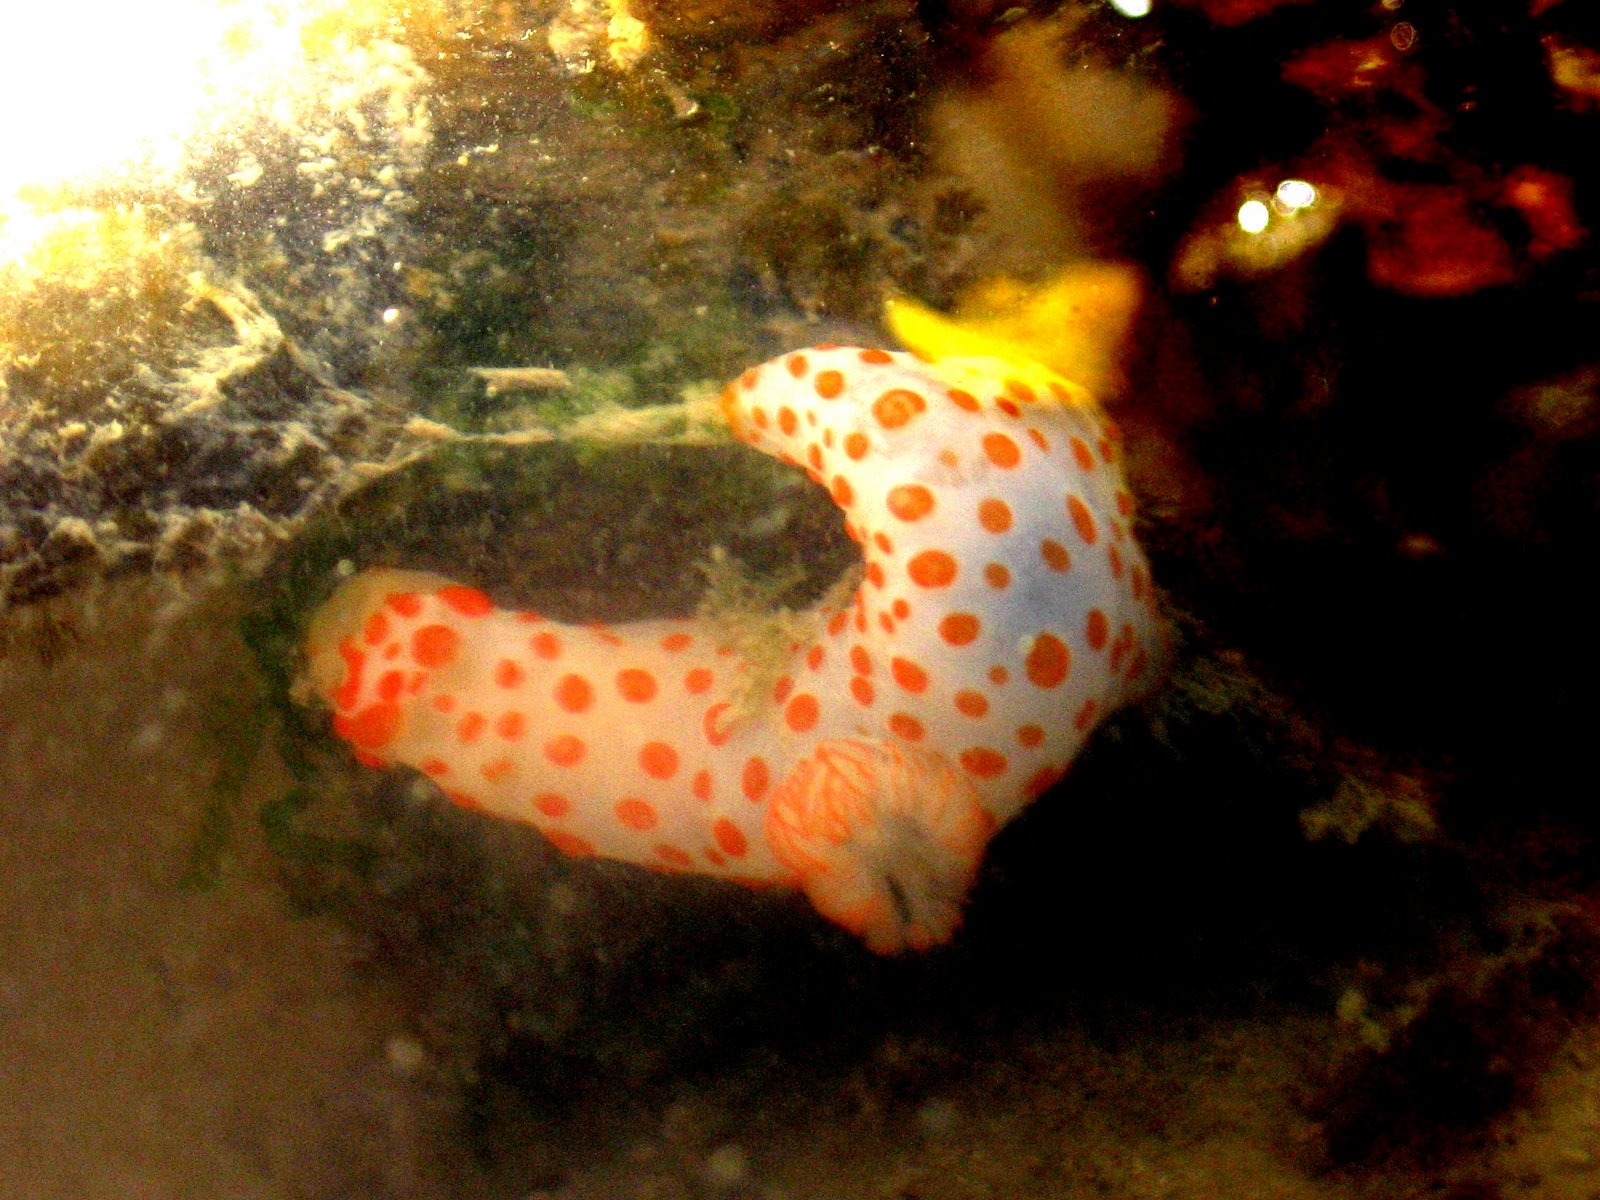 Gymnodoris rubropapulosa nudibranch